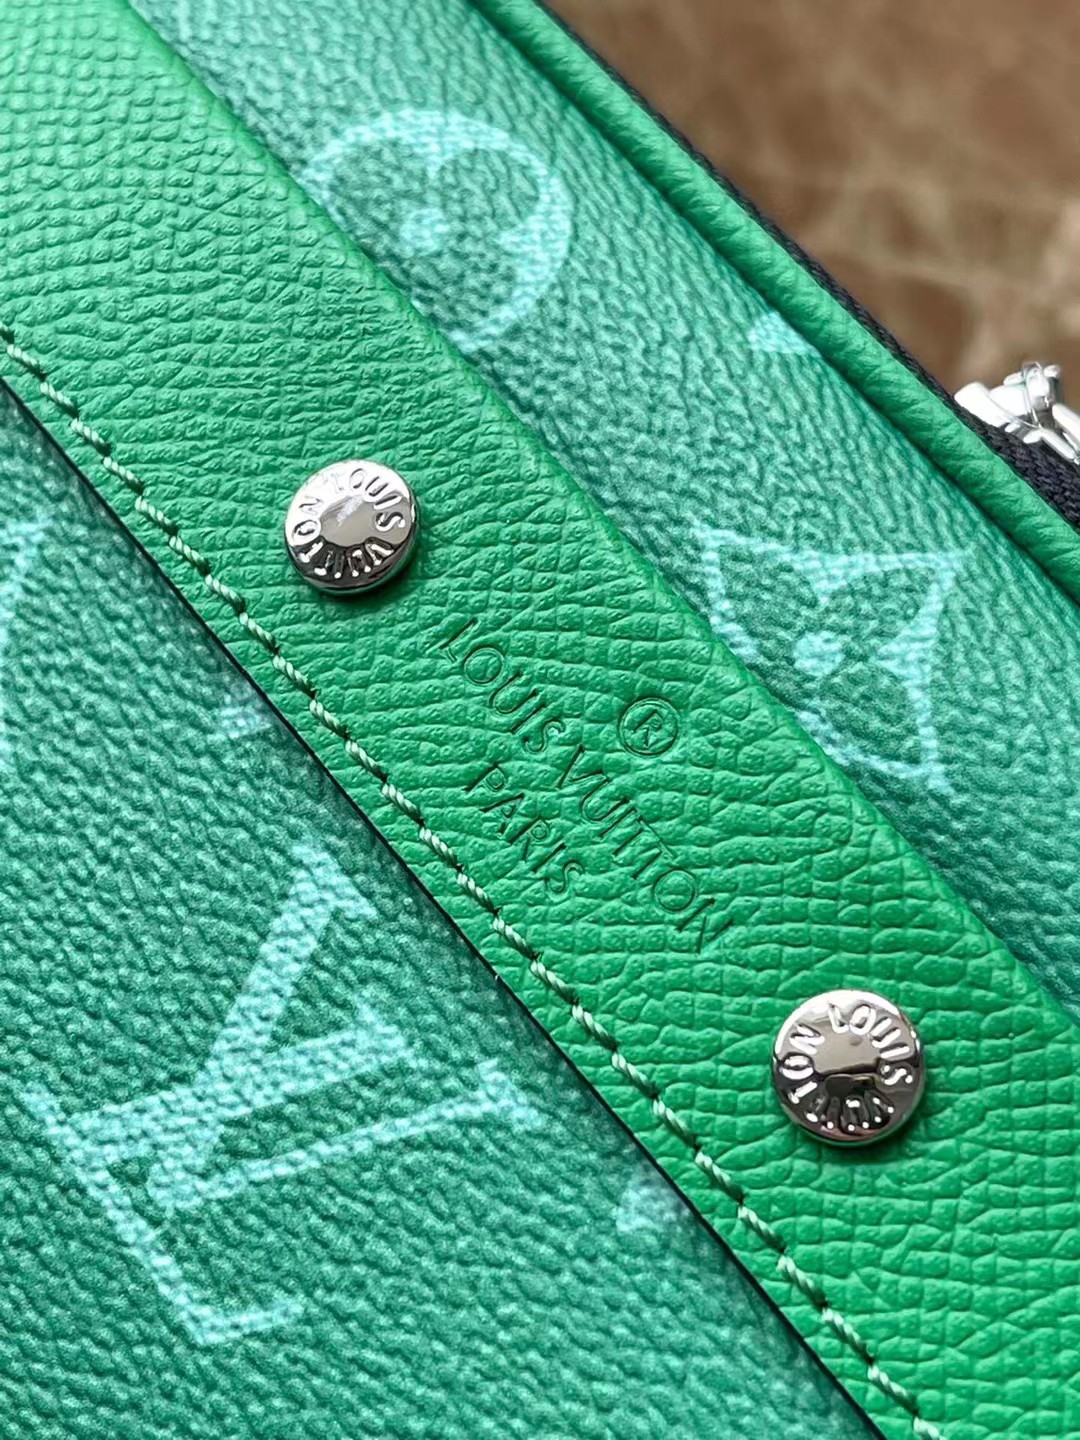 顶级原单M30997绿色本款NanoAlpha手袋出自Taigarama系列为Taiga压纹皮革和Mon